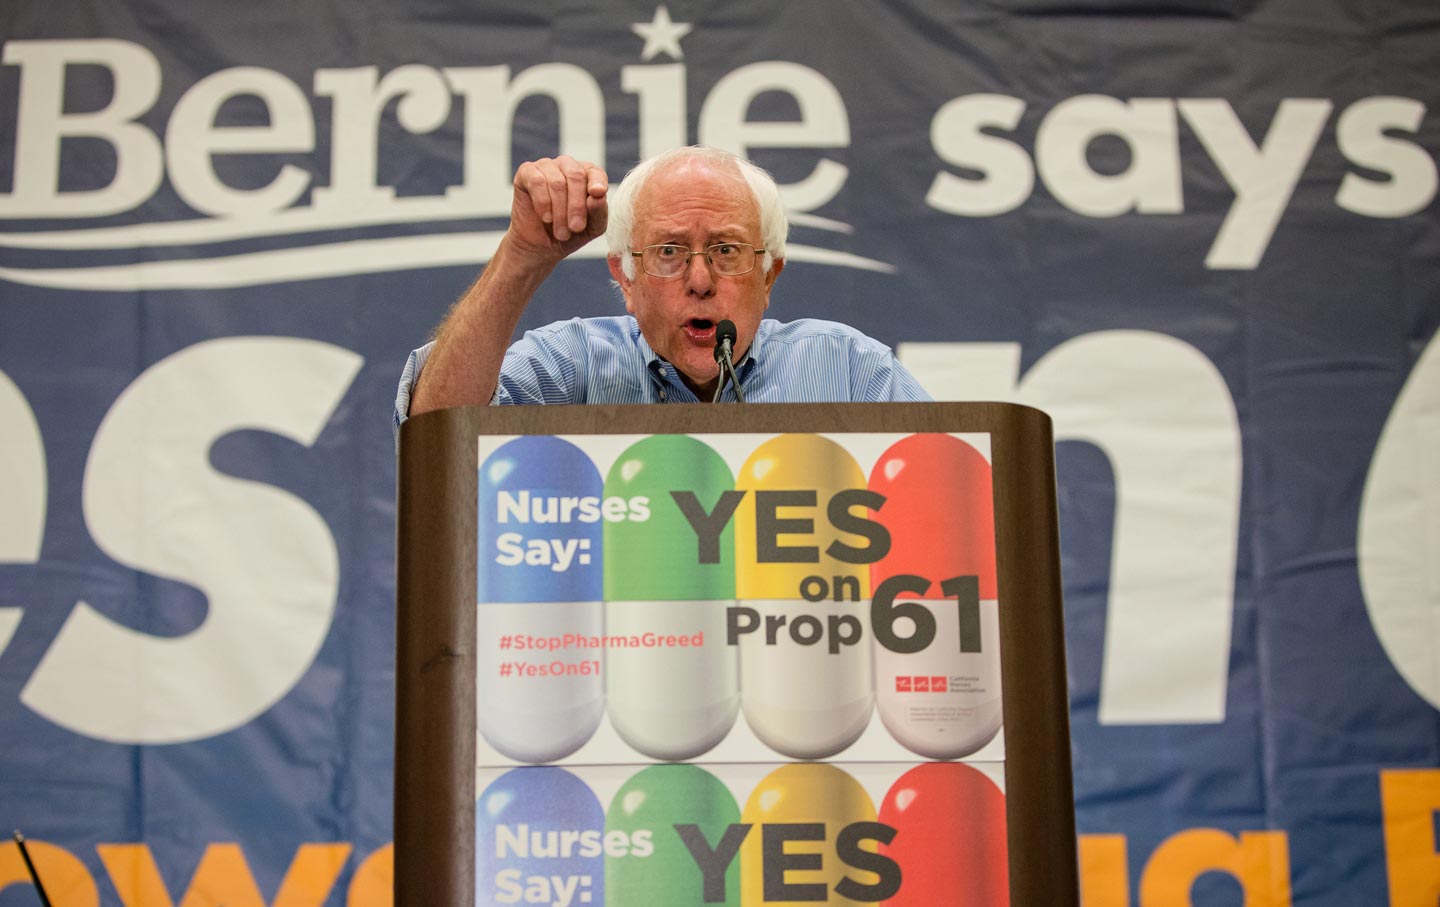 Bernie Sanders Yes on 61